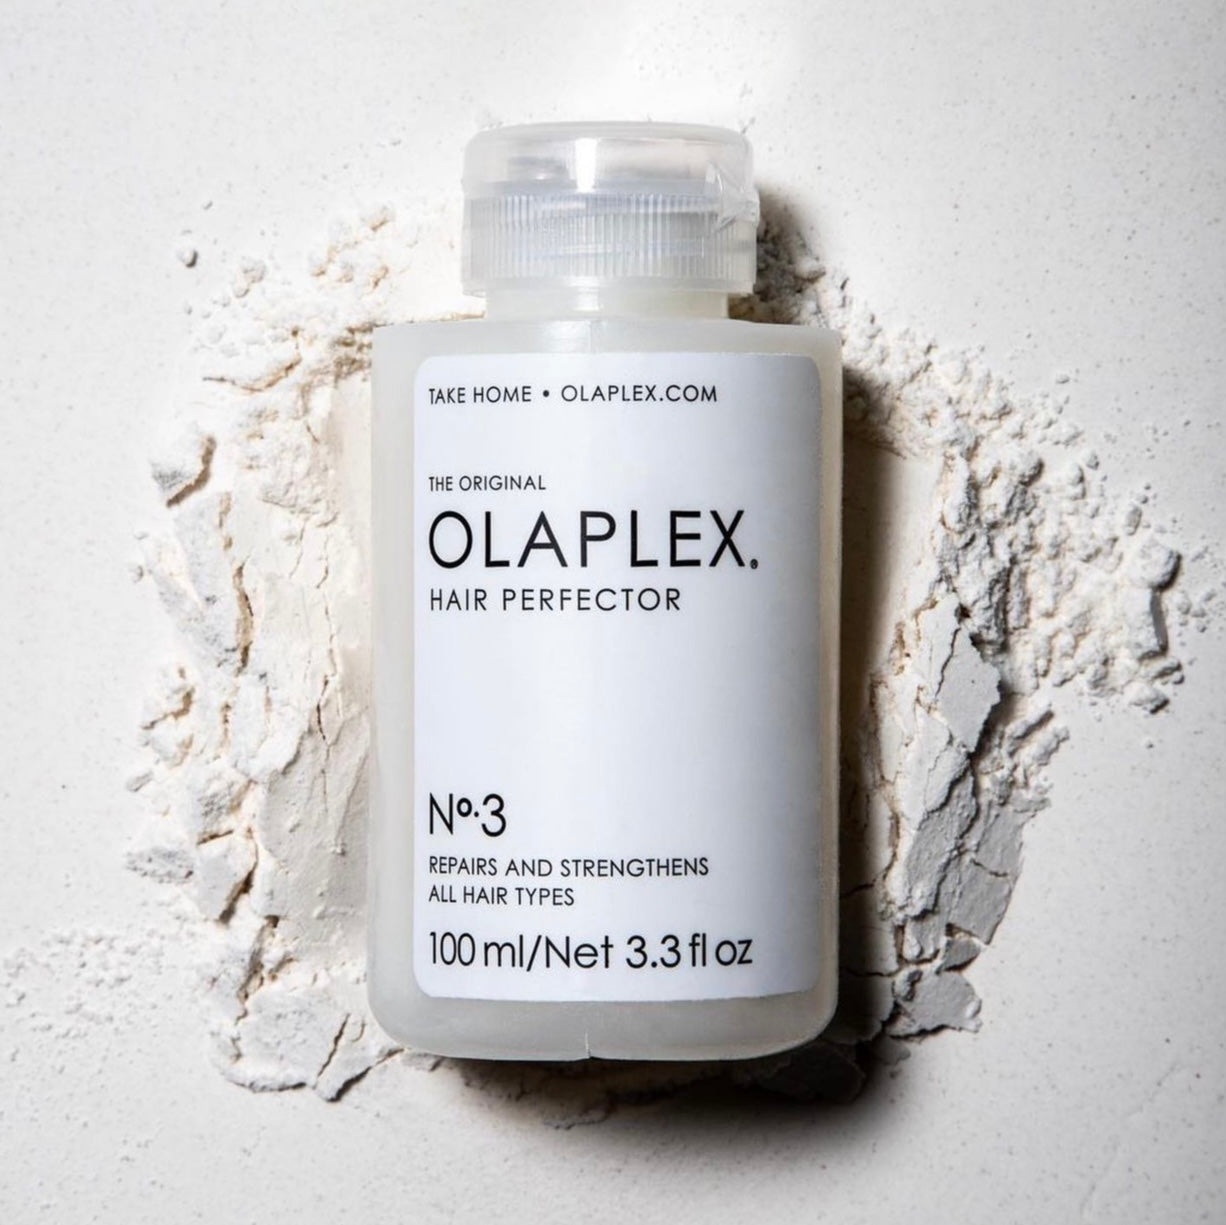 OLAPLEX no. 3 Hair Perfector